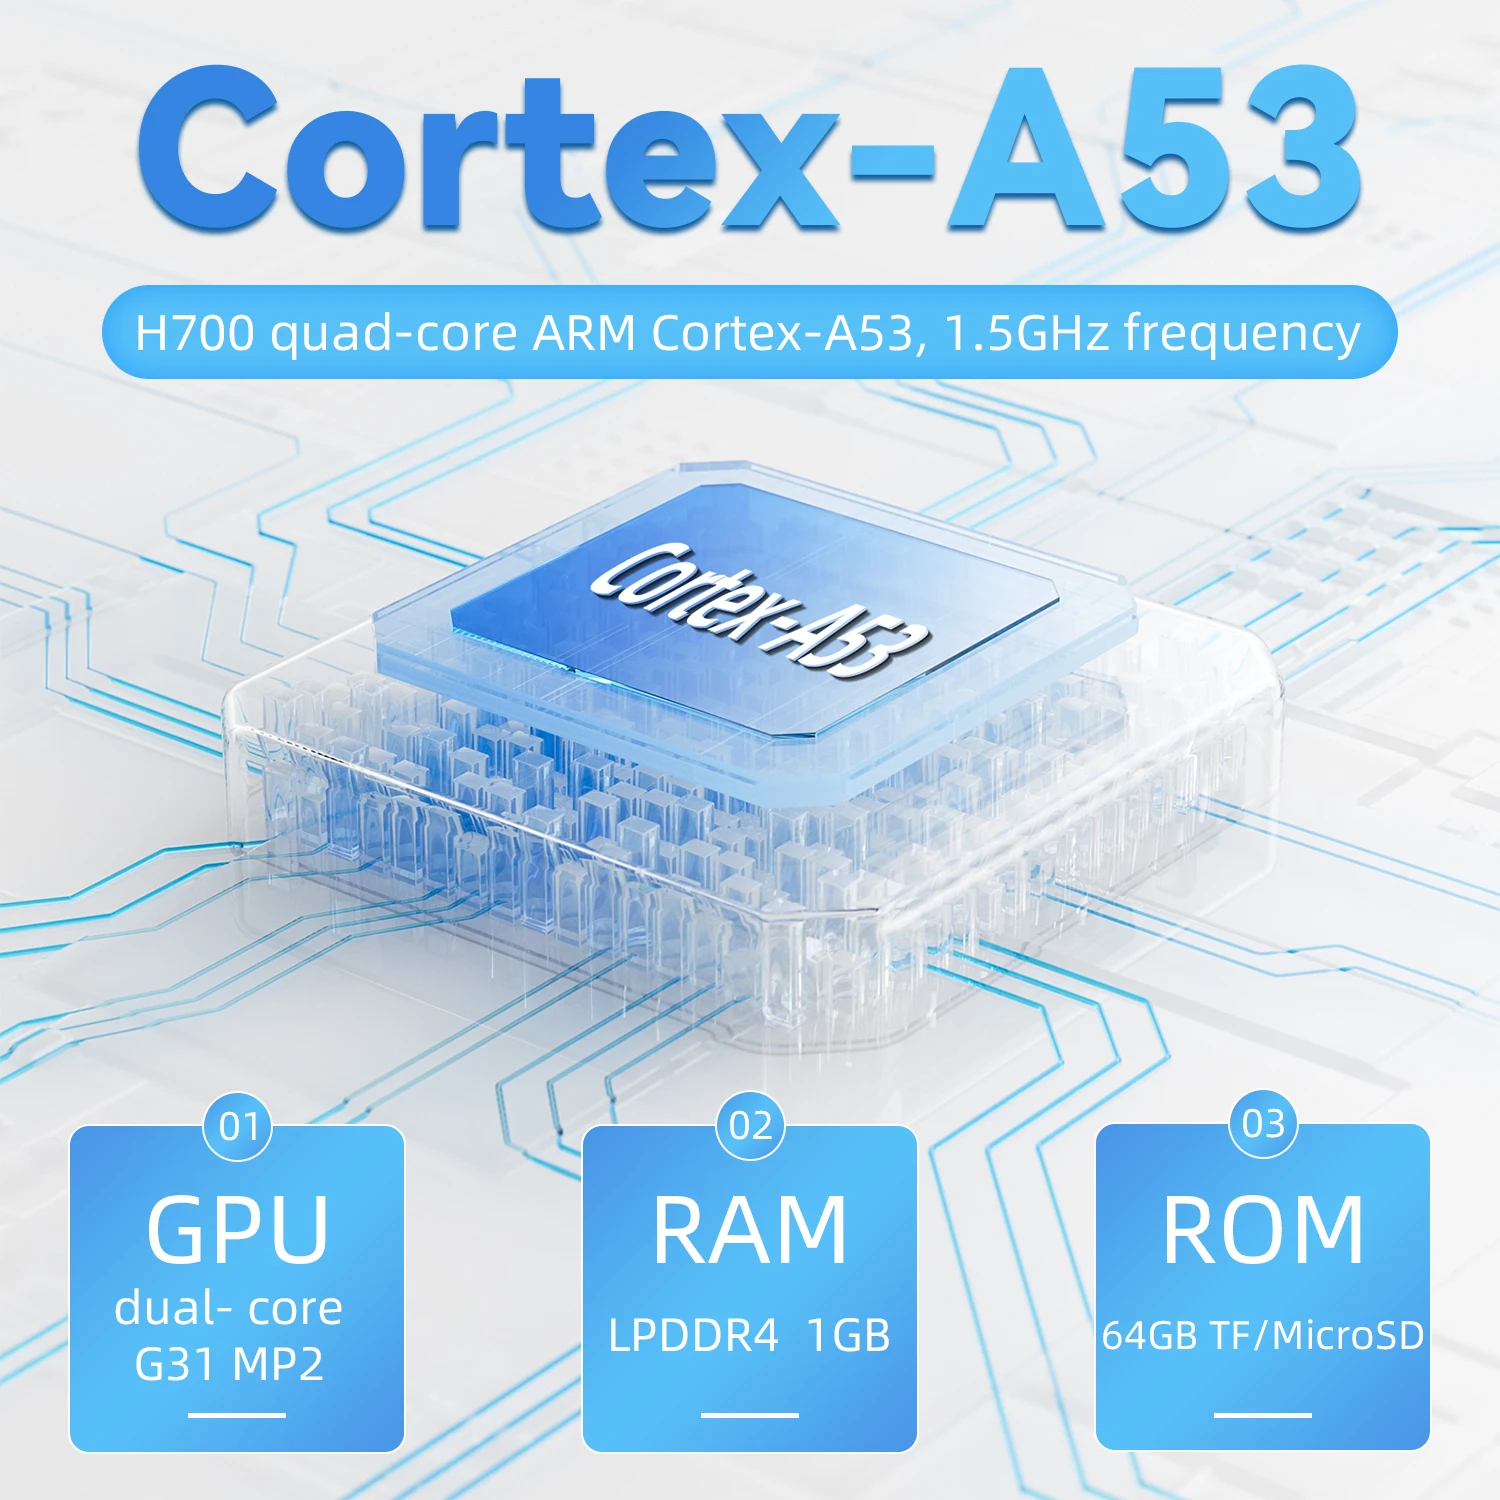 Anbernic-consola de juegos portátil RG35XX PLUS, pantalla IPS de 3,5 pulgadas, salida HDMI, Streaming, Retro, portátil, reproductor de videojuegos, regalos